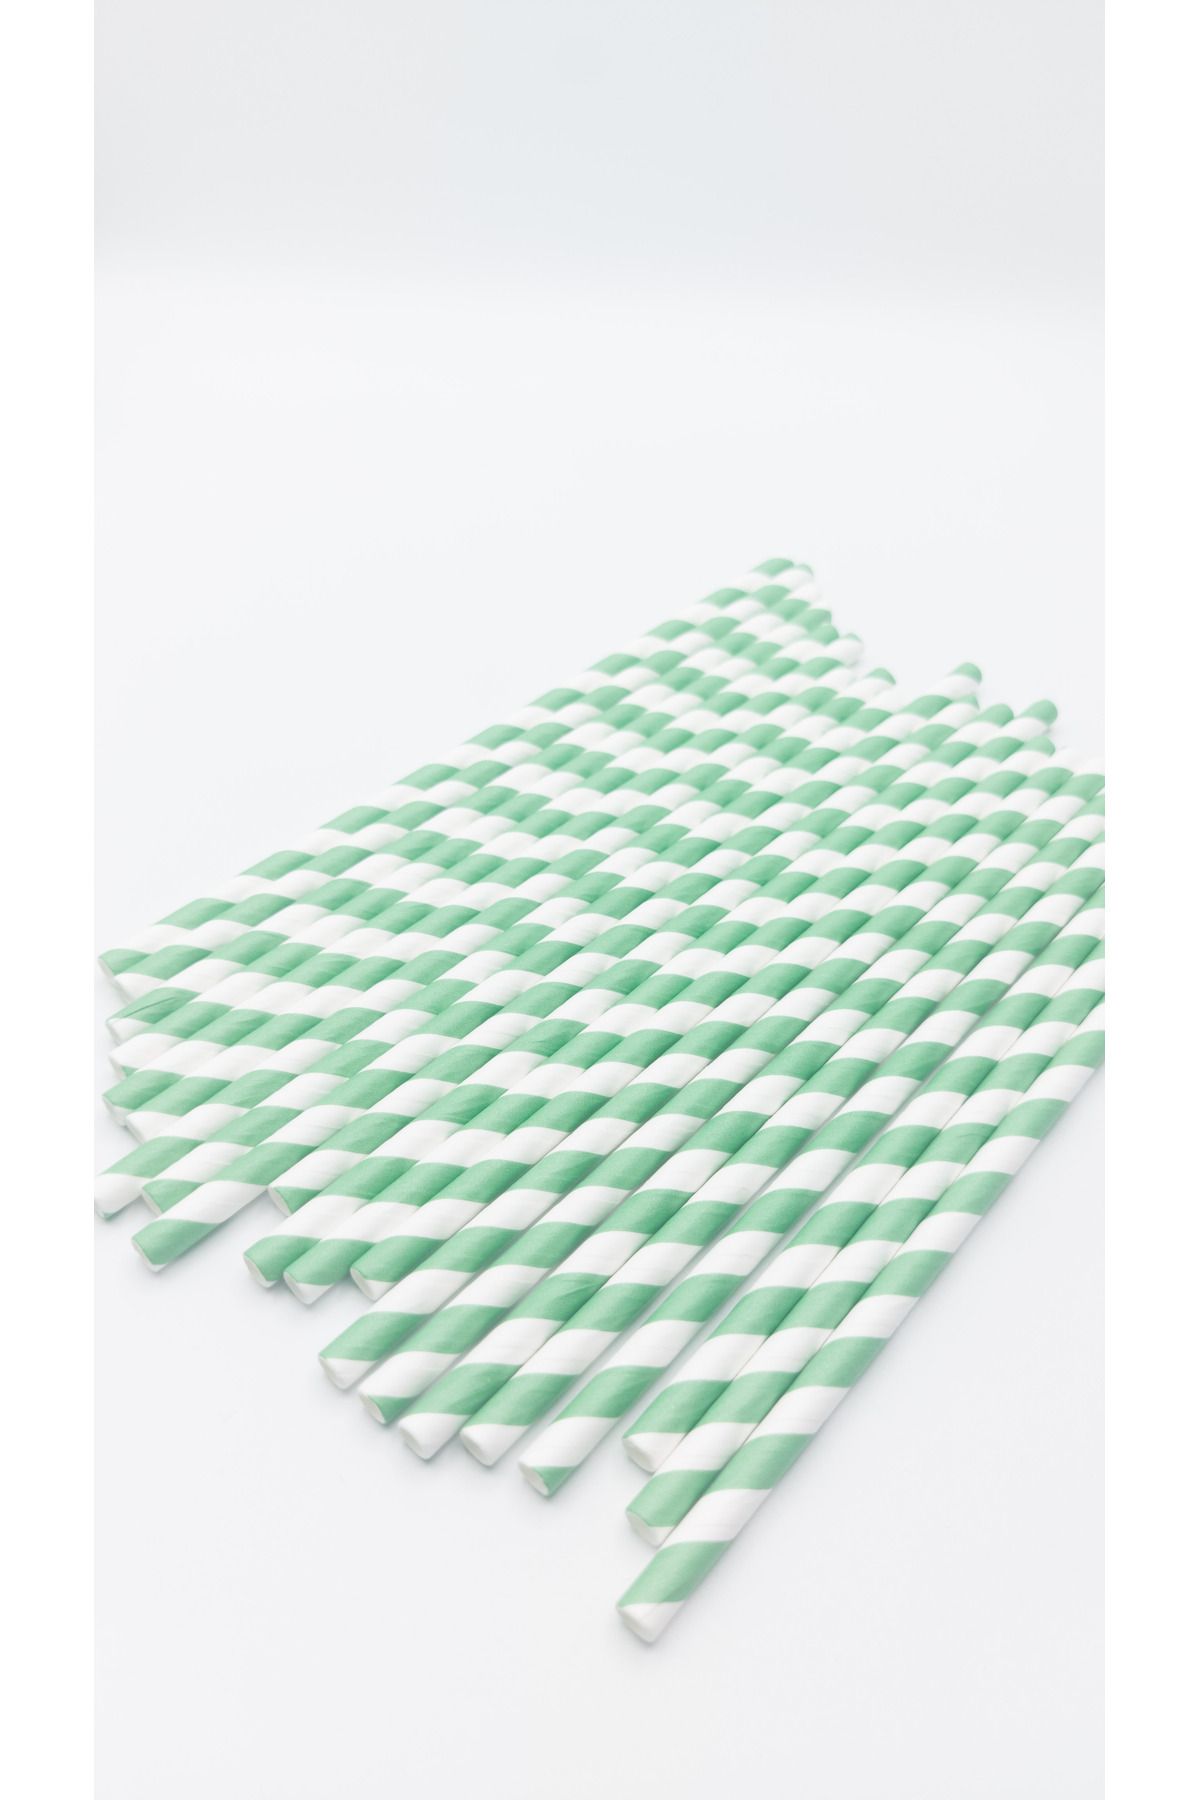 Pars Kağıt Pipet 100 Adet Çap:6 mm Uzunluk:20 cm- Doğayla Dost Geri Dönüştürülebilir Kağıt Pipet